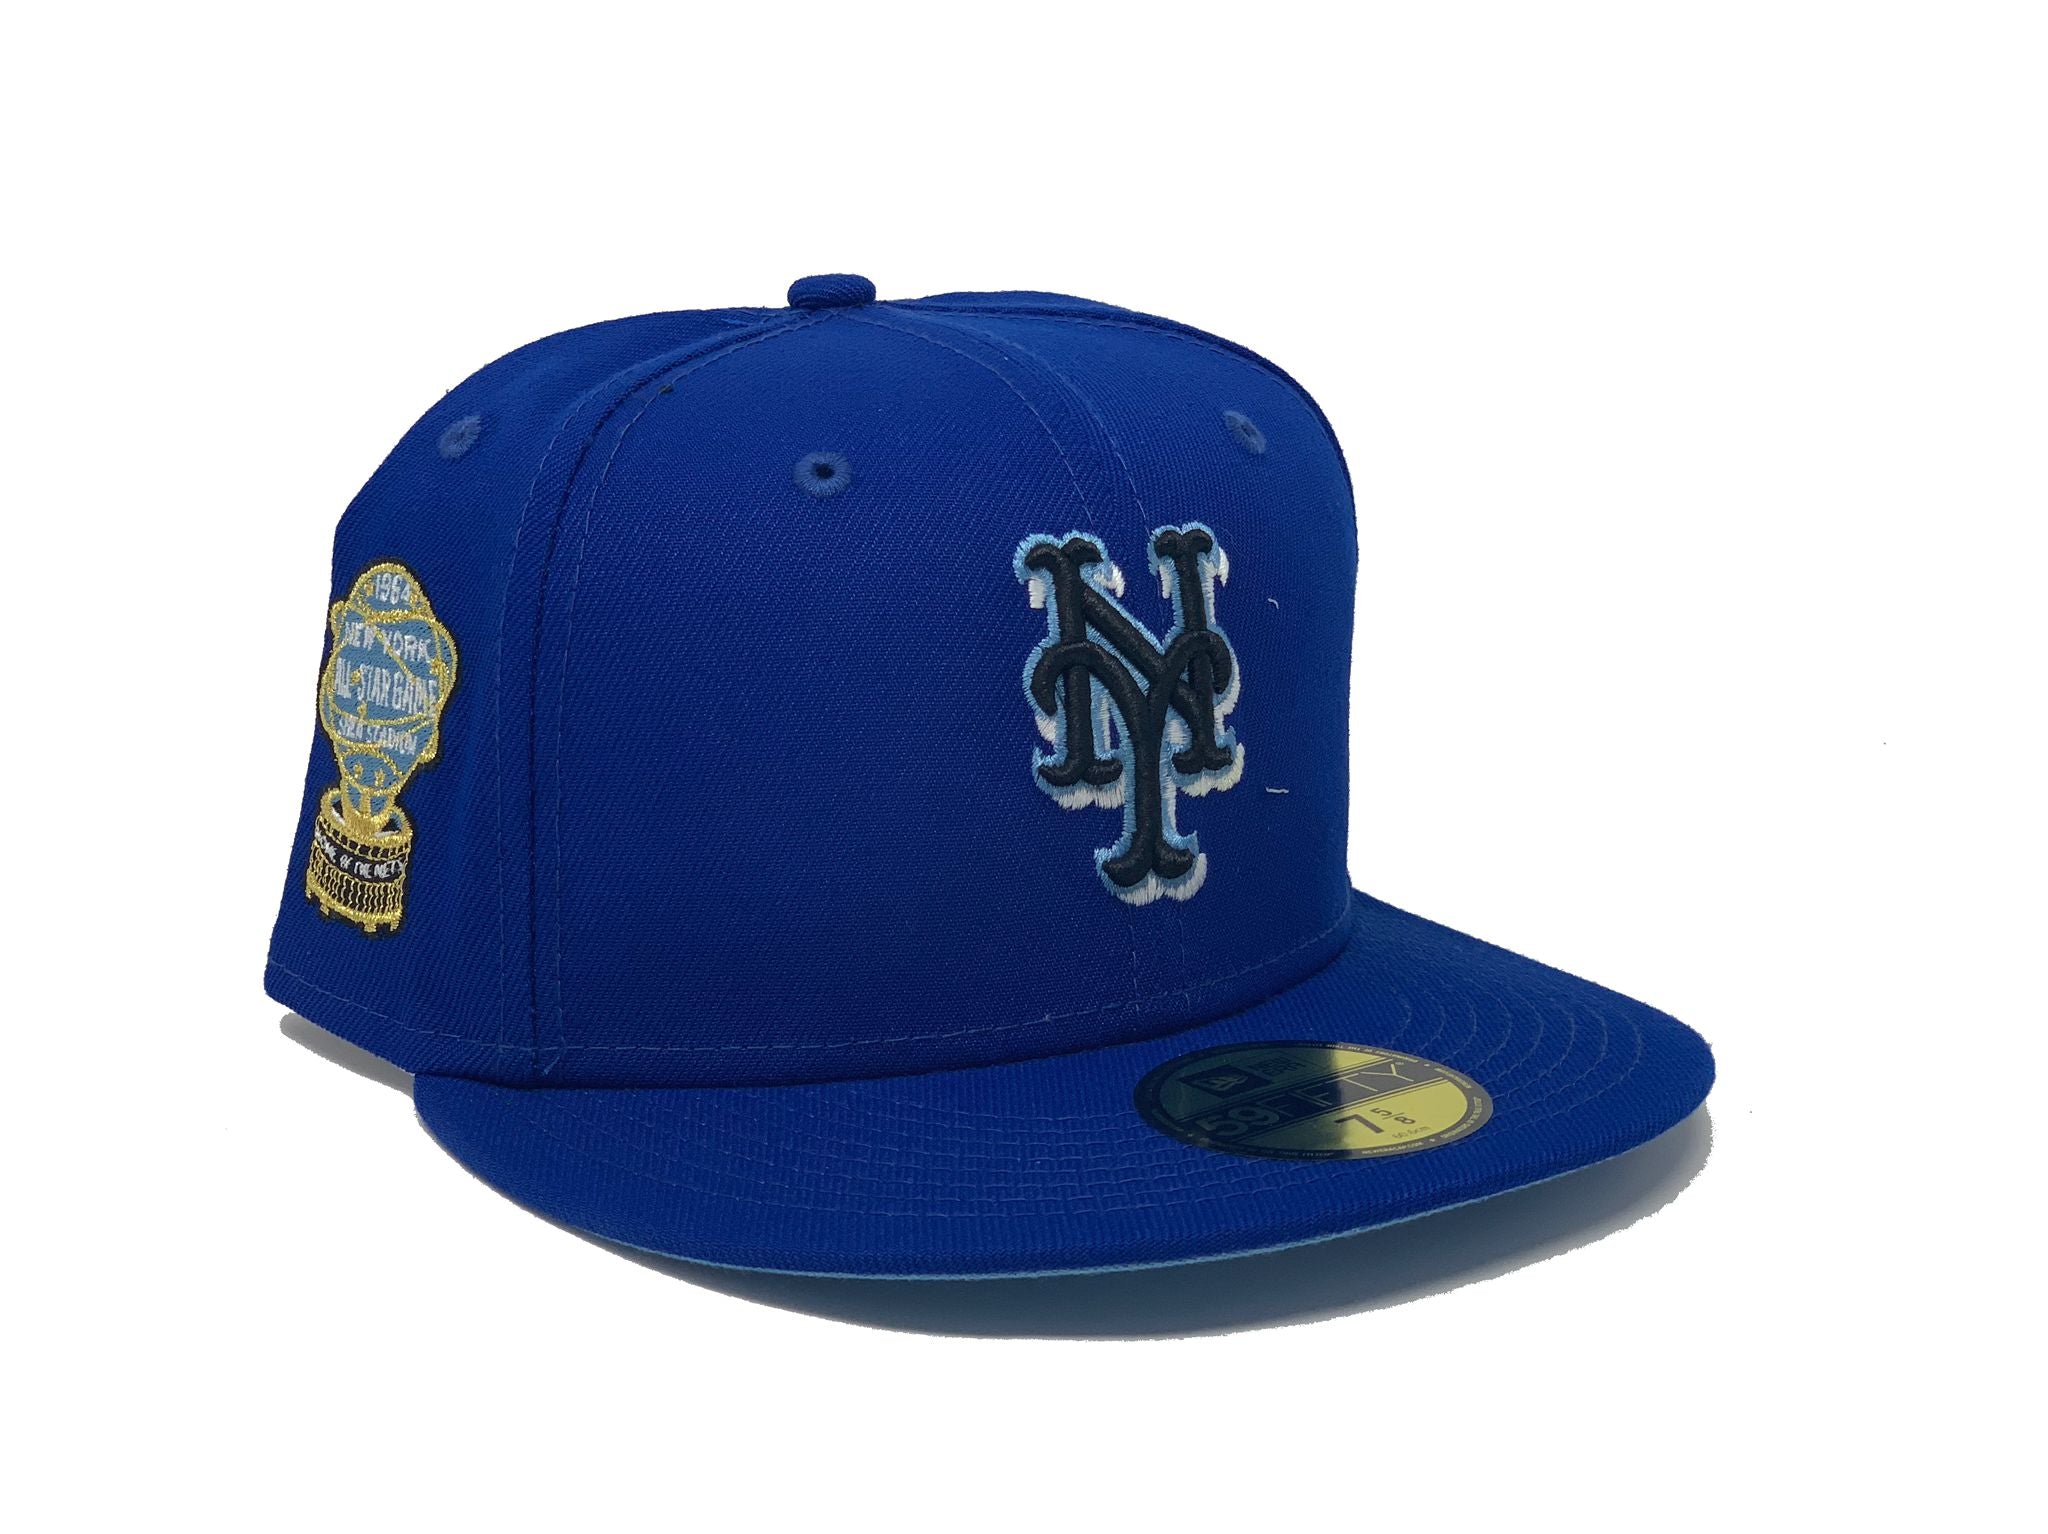  New Era New York Mets Light Royal Blue Side Split